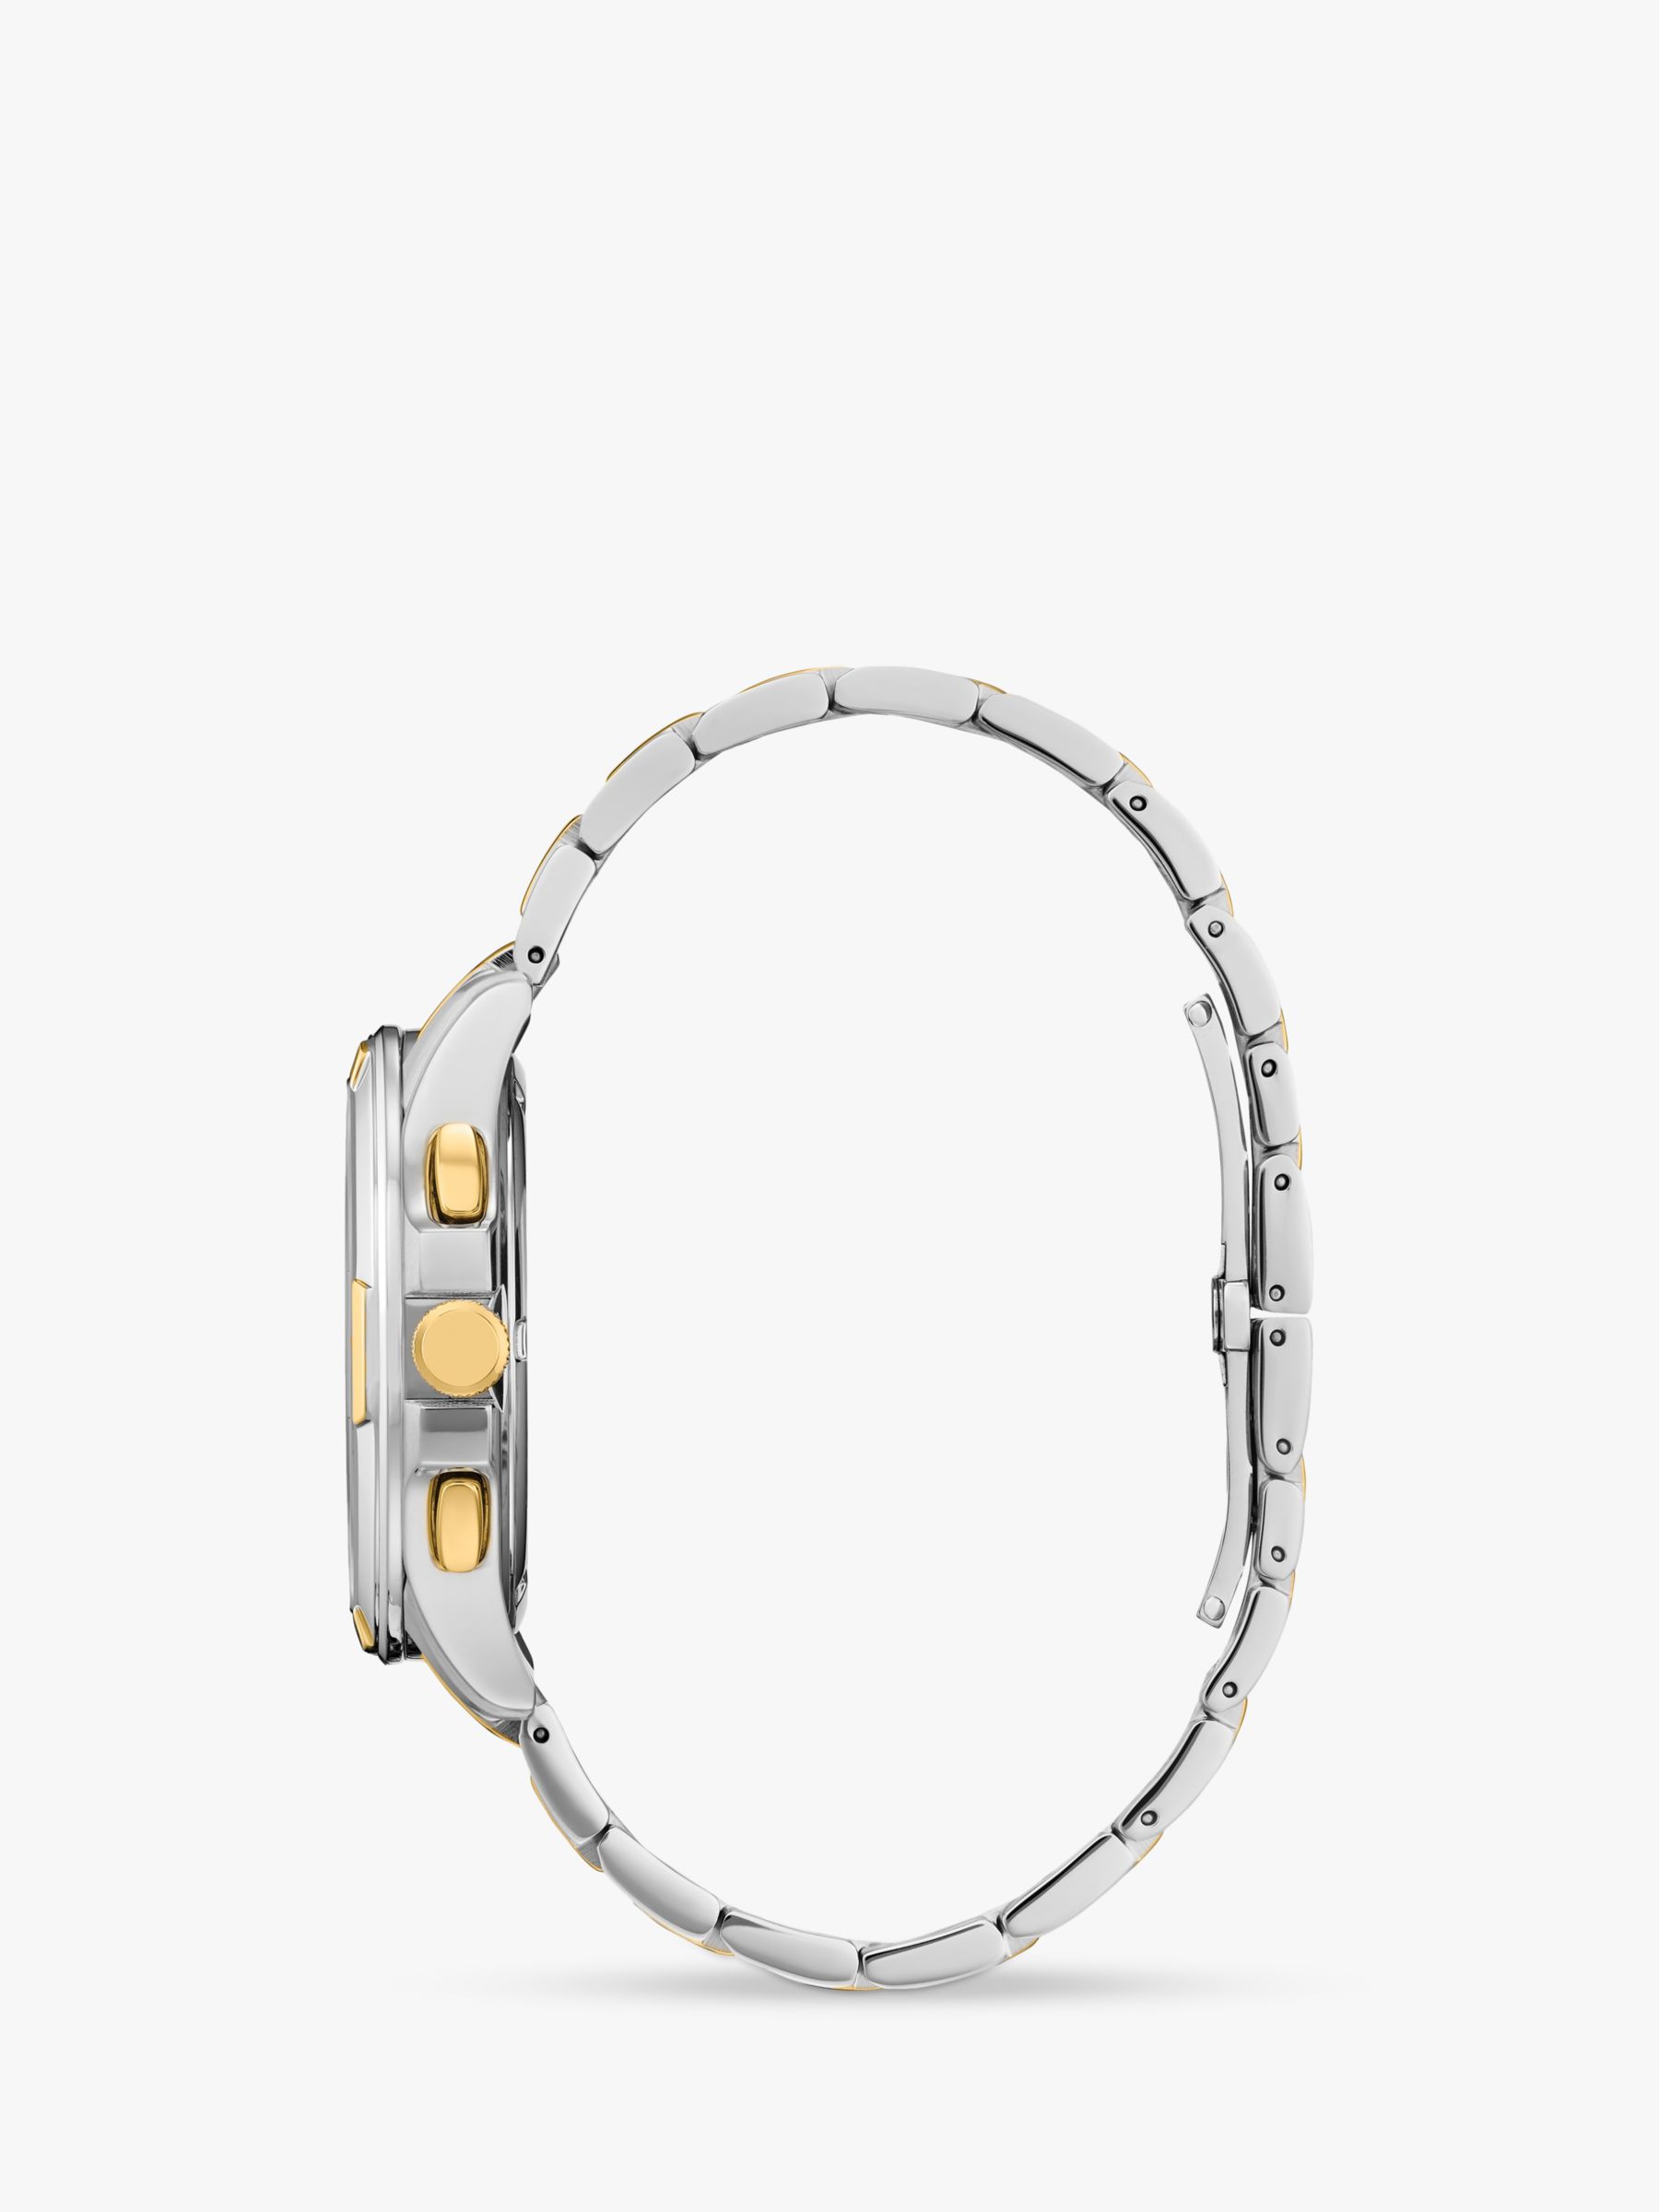 Buy Citizen Men's Classic 8700 Eco-Drive Bracelet Strap Watch Online at johnlewis.com